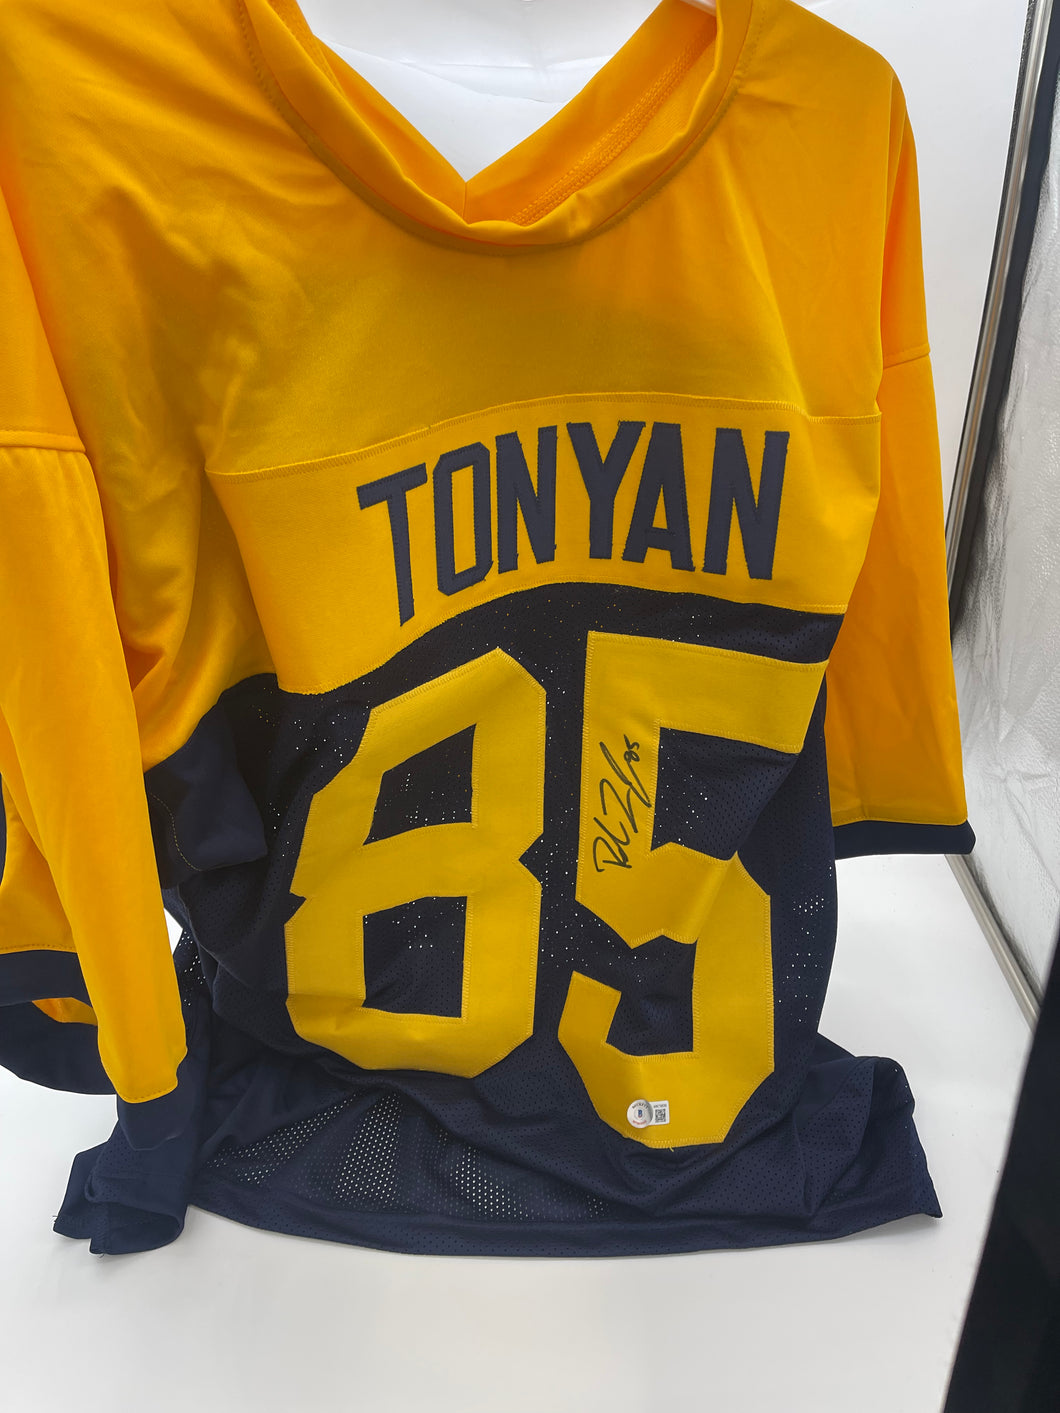 Robert Tonyan custom signed jersey